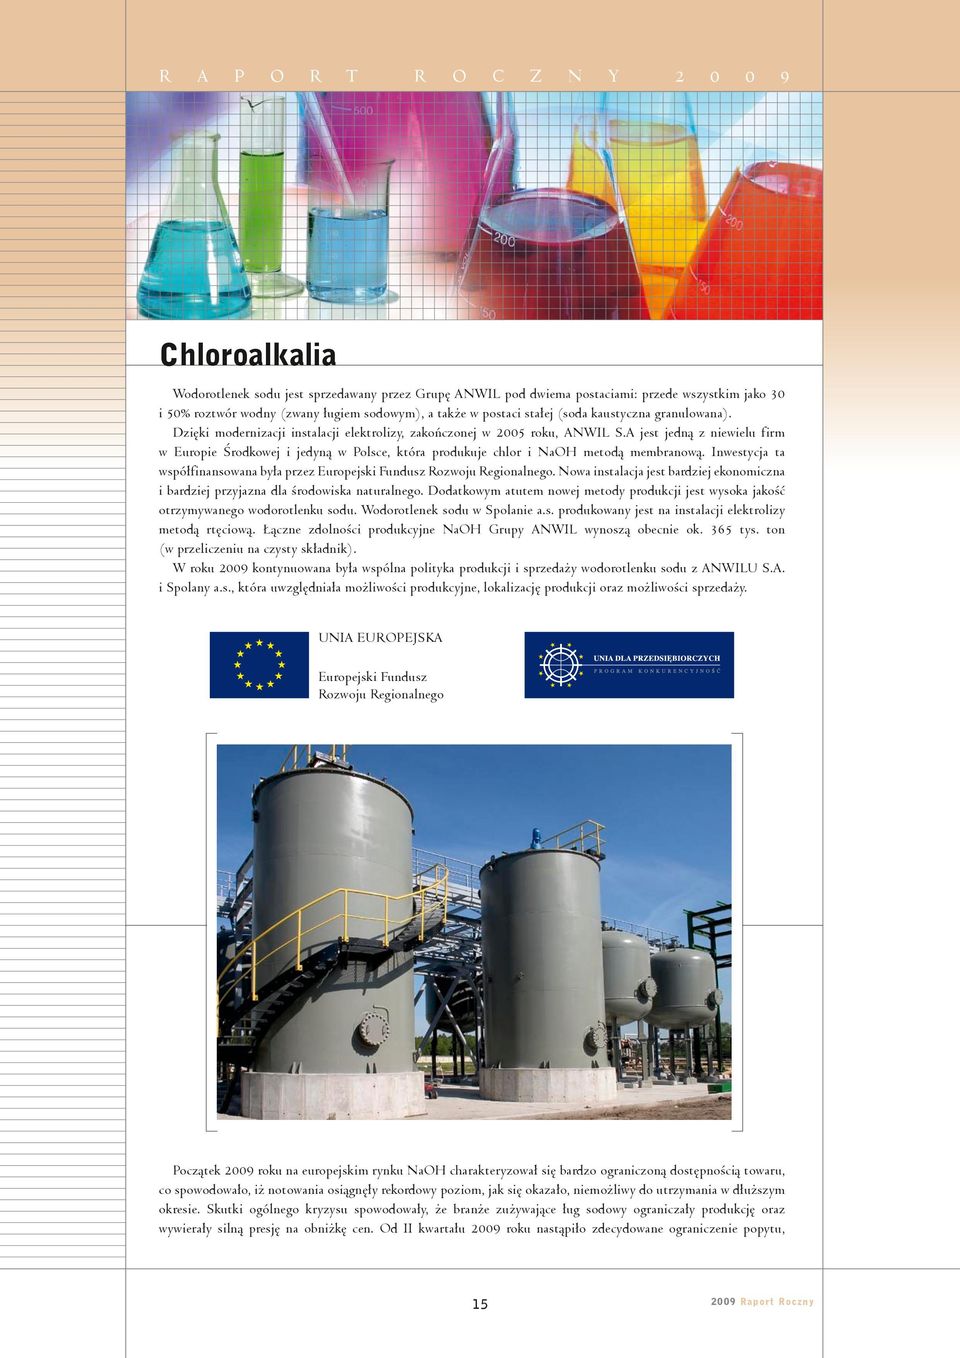 A jest jedną z niewielu firm w Europie Środkowej i jedyną w Polsce, która produkuje chlor i NaOH metodą membranową. Inwestycja ta współfinansowana była przez Europejski Fundusz Rozwoju Regionalnego.